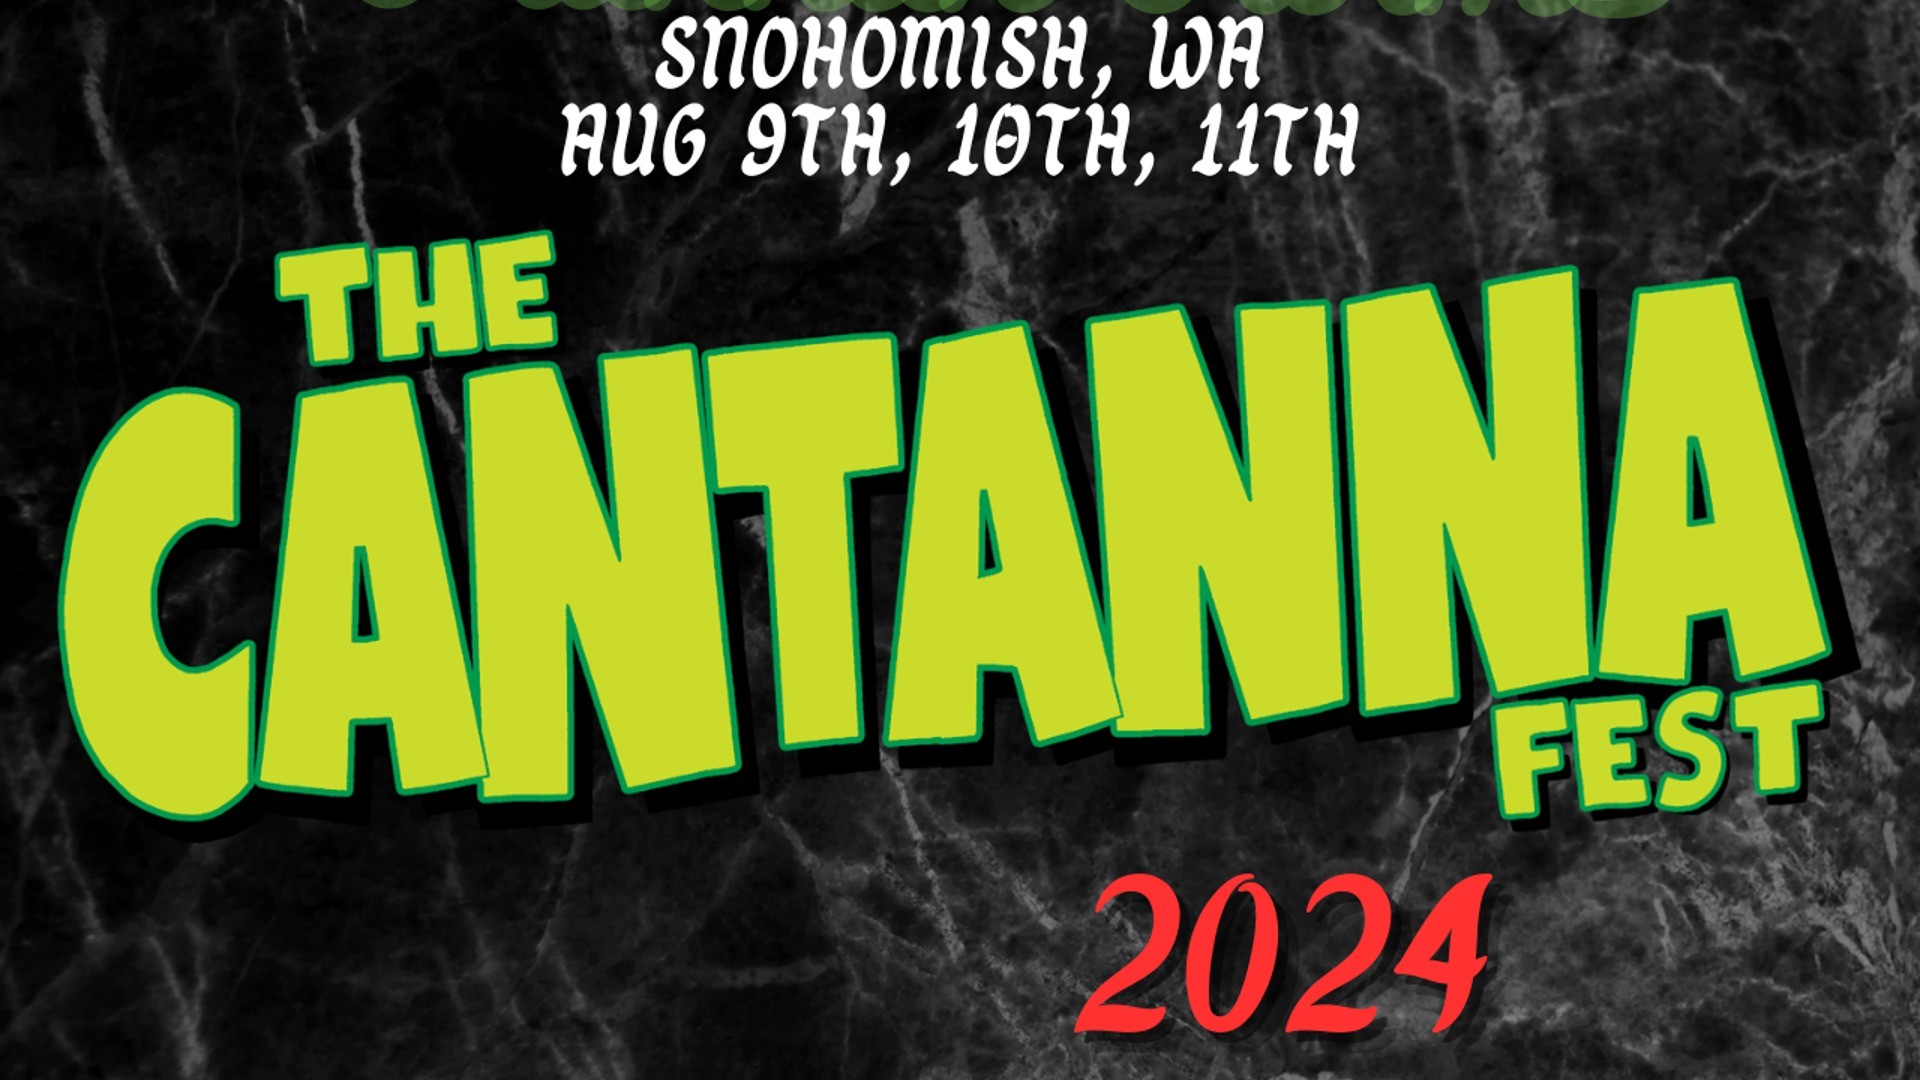 Cantanna Festival 2024 Vendor Booths